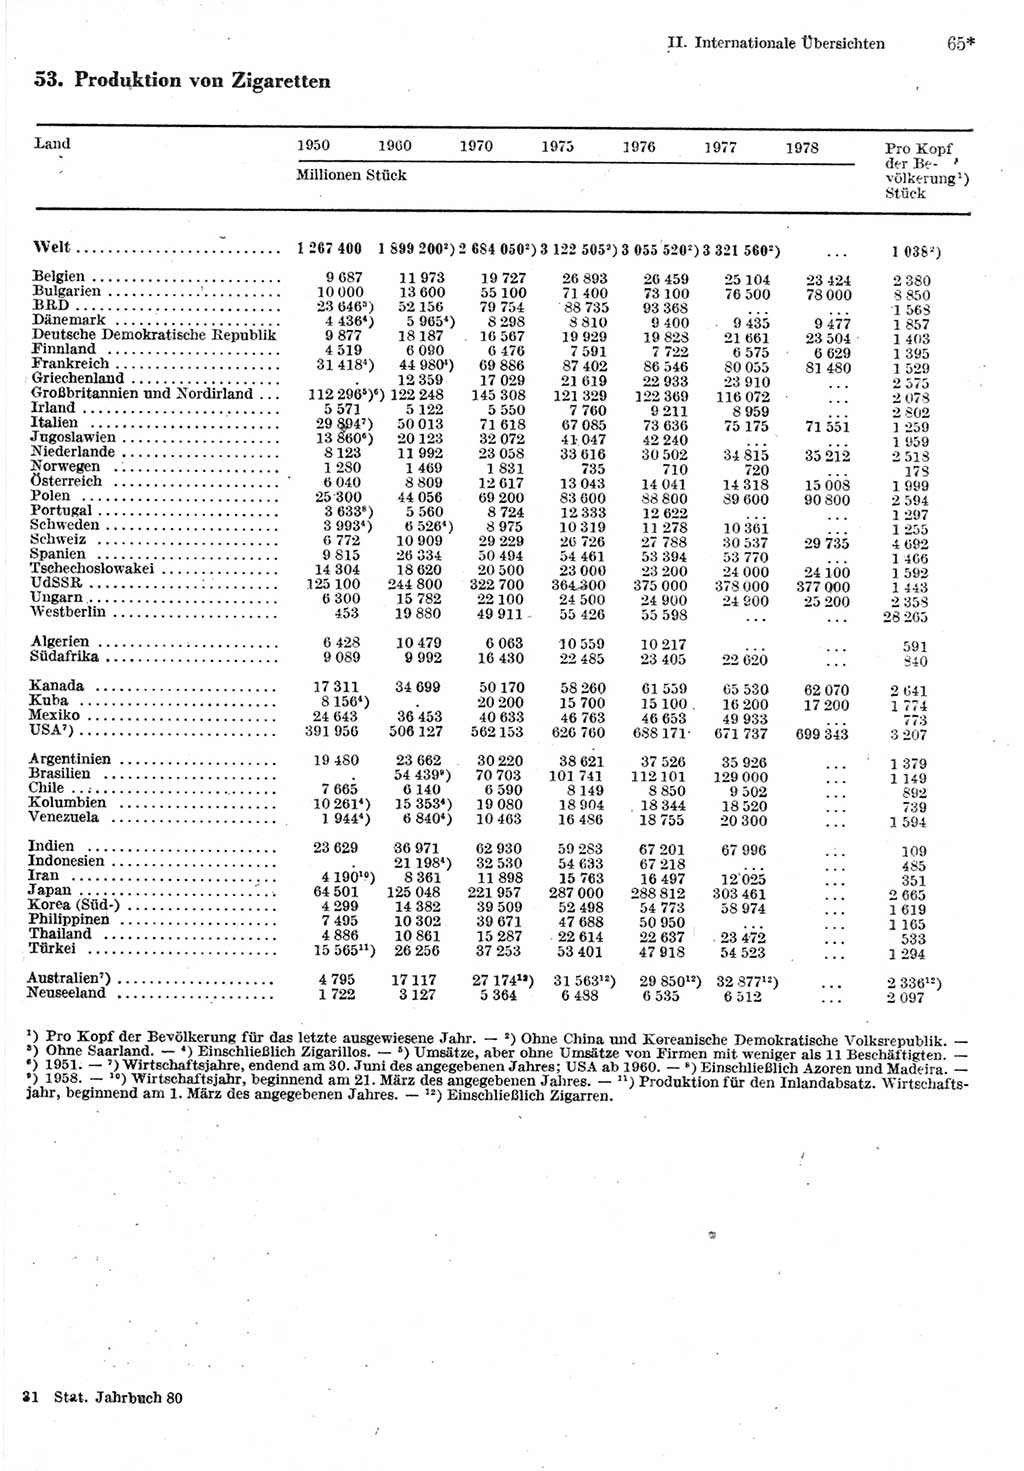 Statistisches Jahrbuch der Deutschen Demokratischen Republik (DDR) 1980, Seite 65 (Stat. Jb. DDR 1980, S. 65)